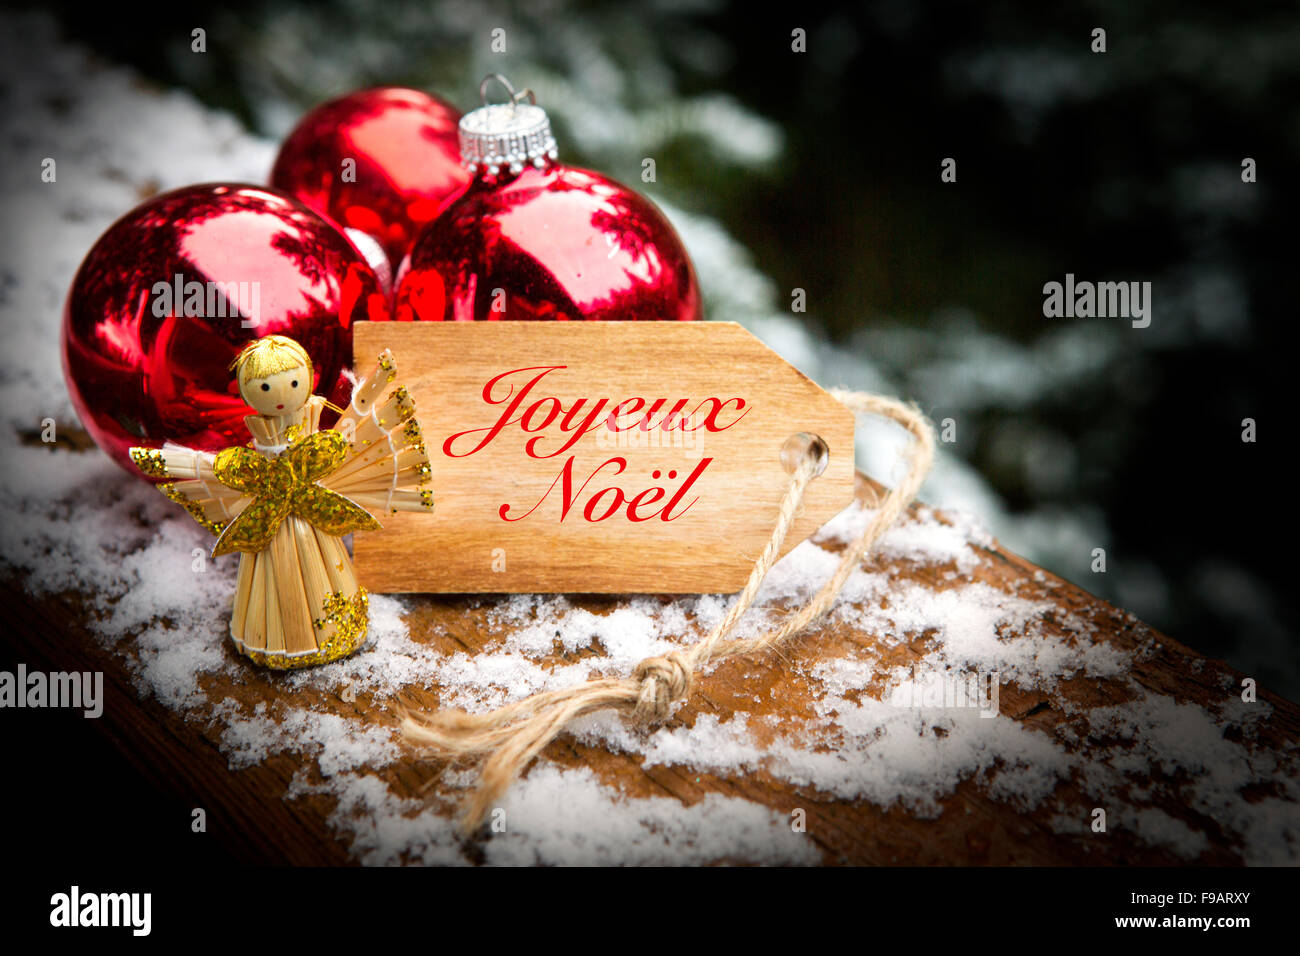 Tag en bois avec les mots français "Joyeux noel" (Joyeux Noël) à côté des  boules de noël et angel Photo Stock - Alamy